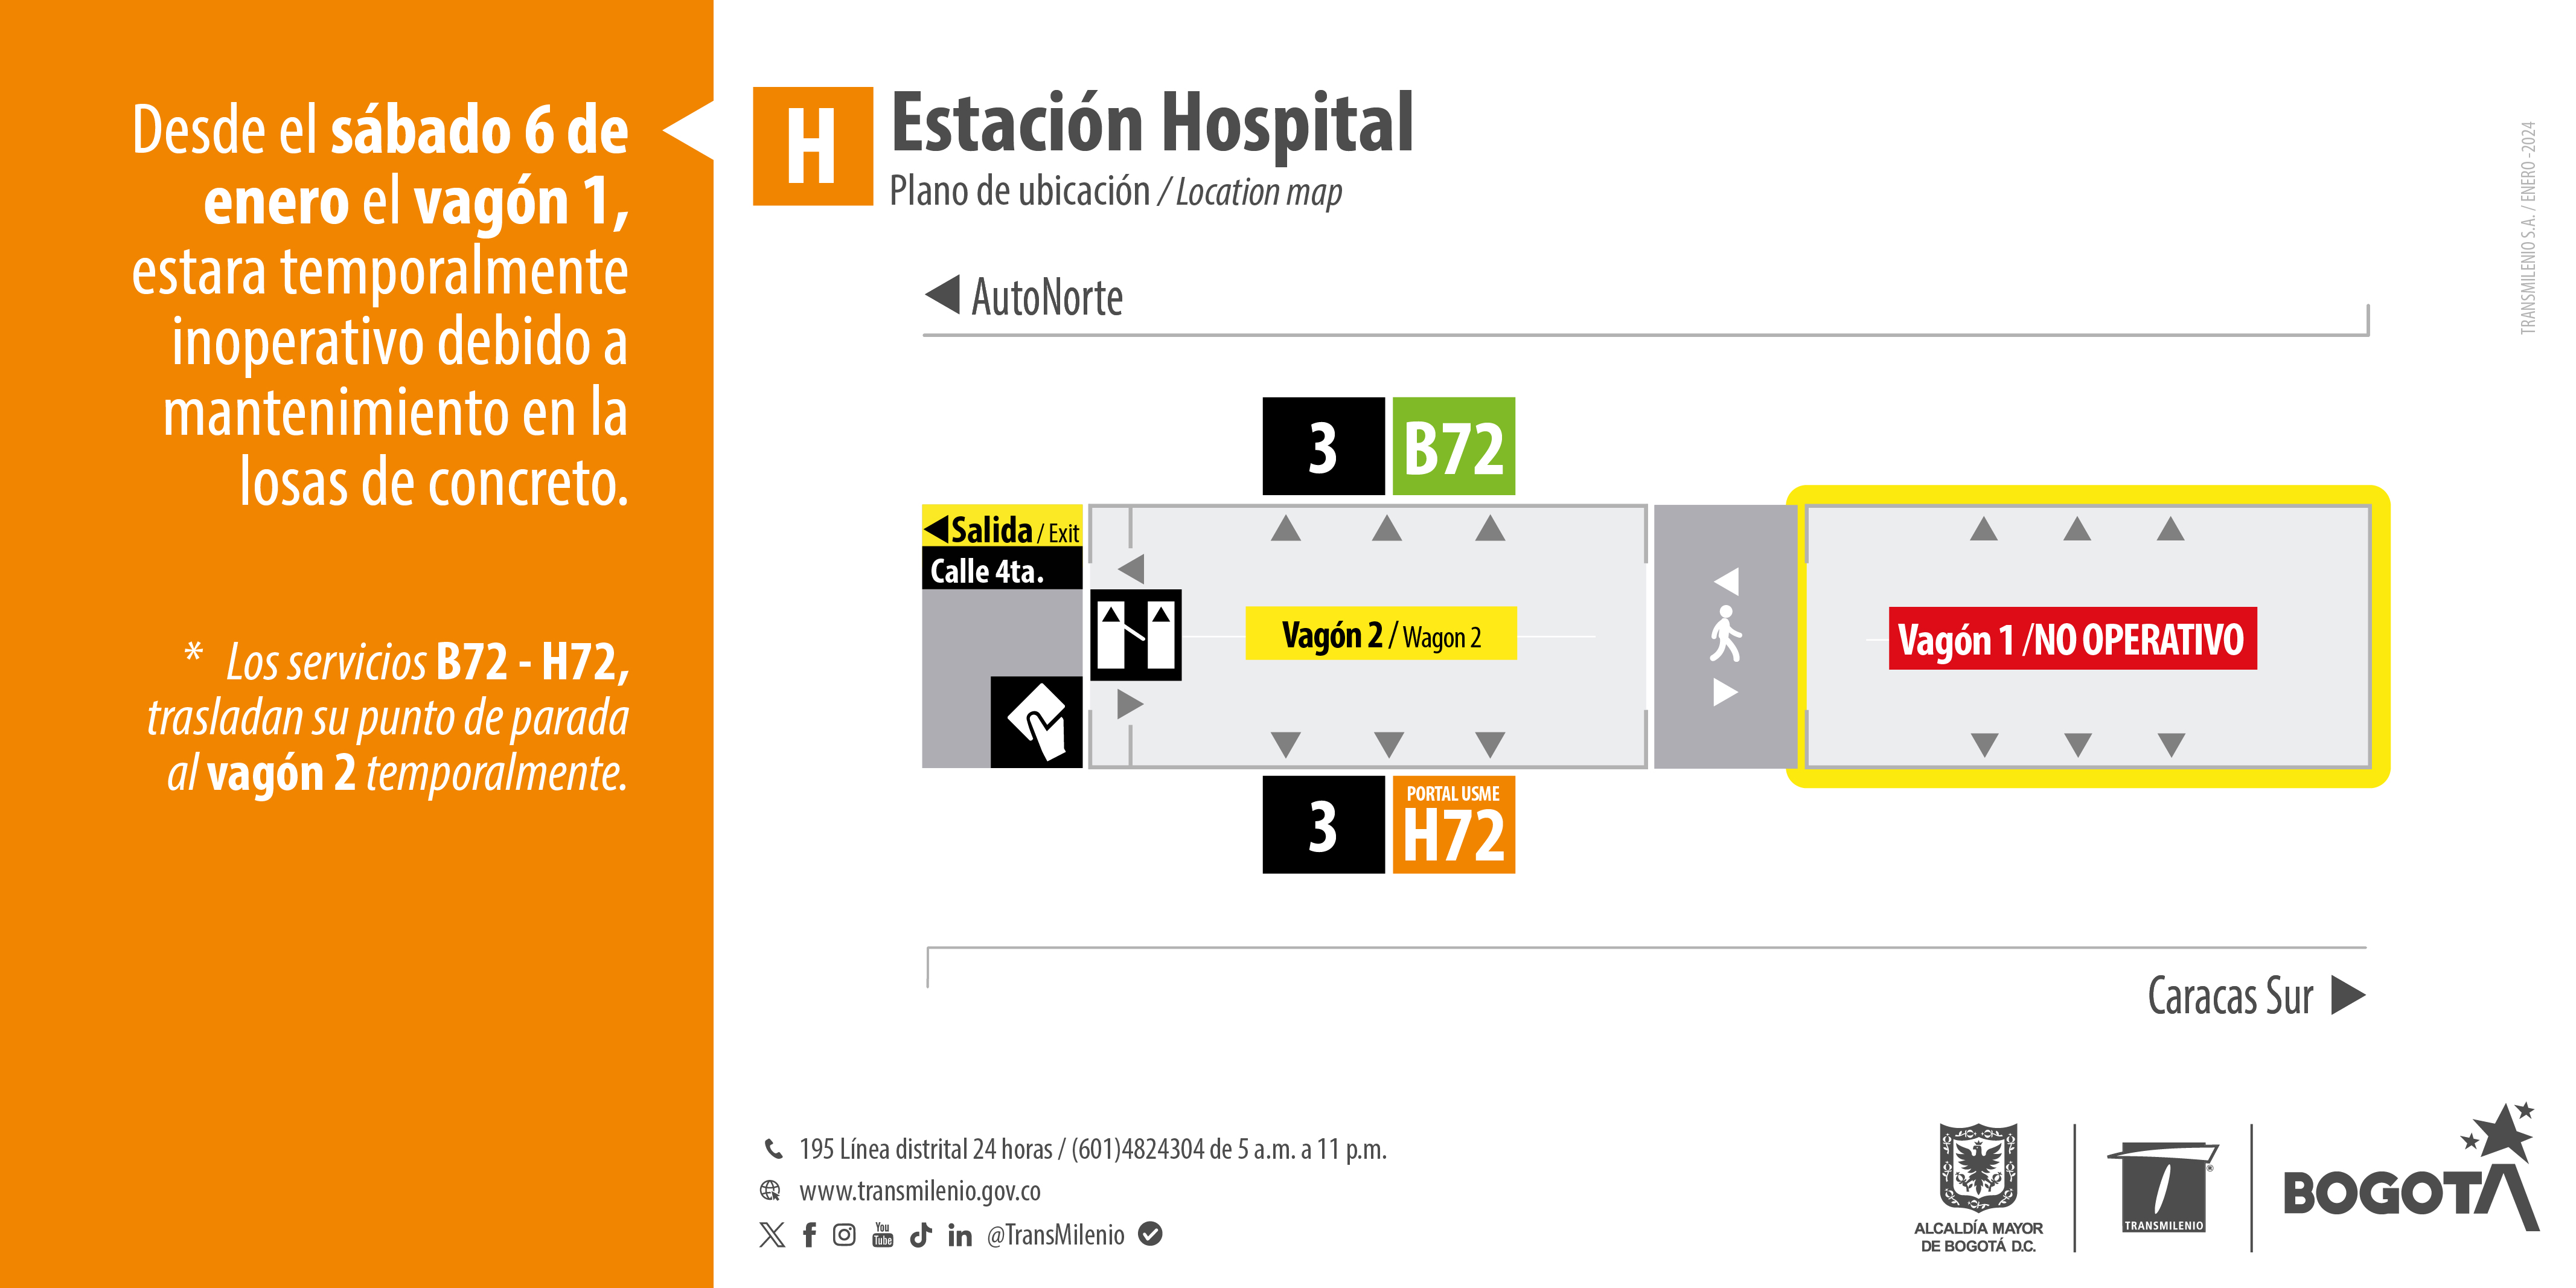 Estación Hospital tendrá cierre en uno de sus vagones